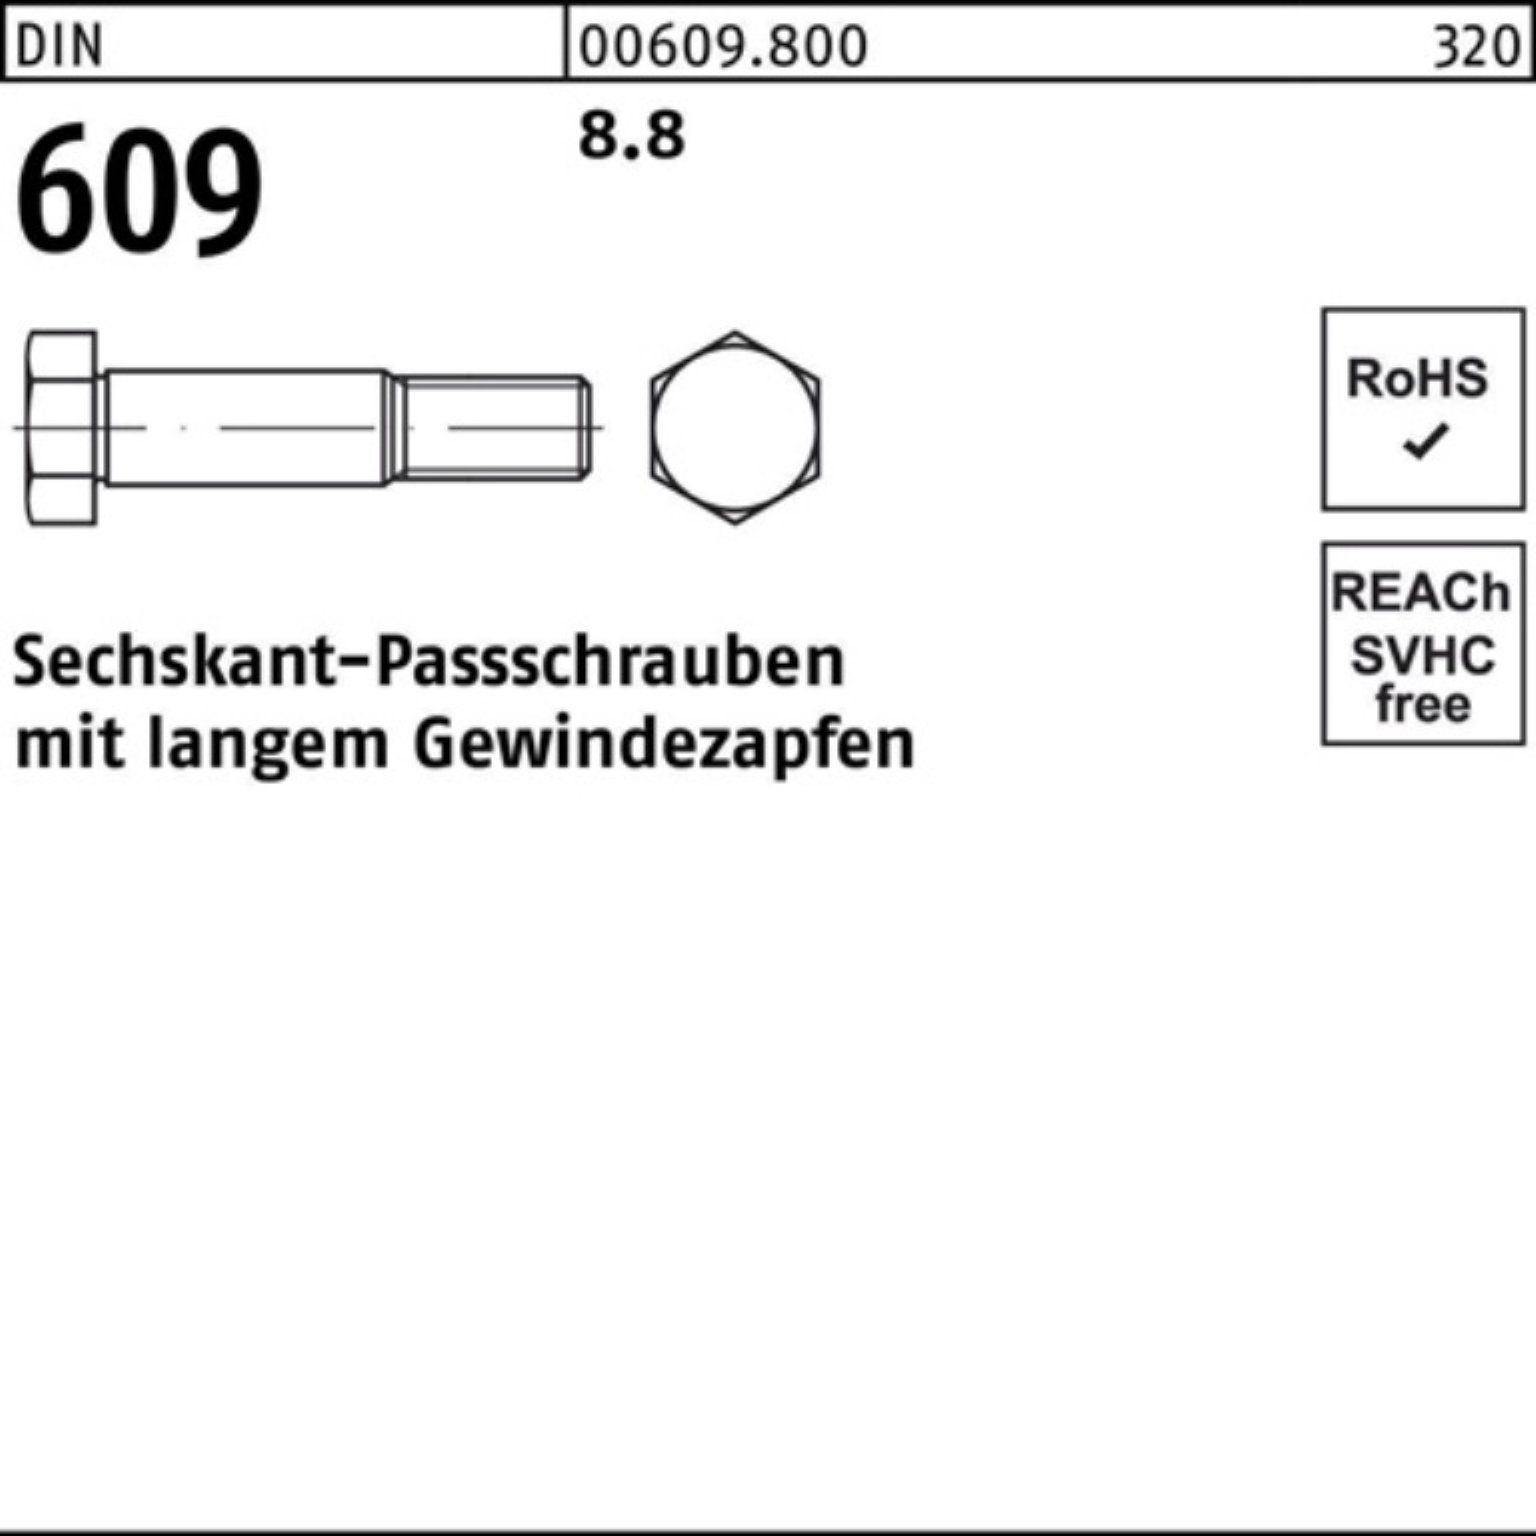 Verkaufsfläche Reyher Schraube 100er Pack DIN langem Sechskantpassschraube M36x 90 609 Gewindezapfen